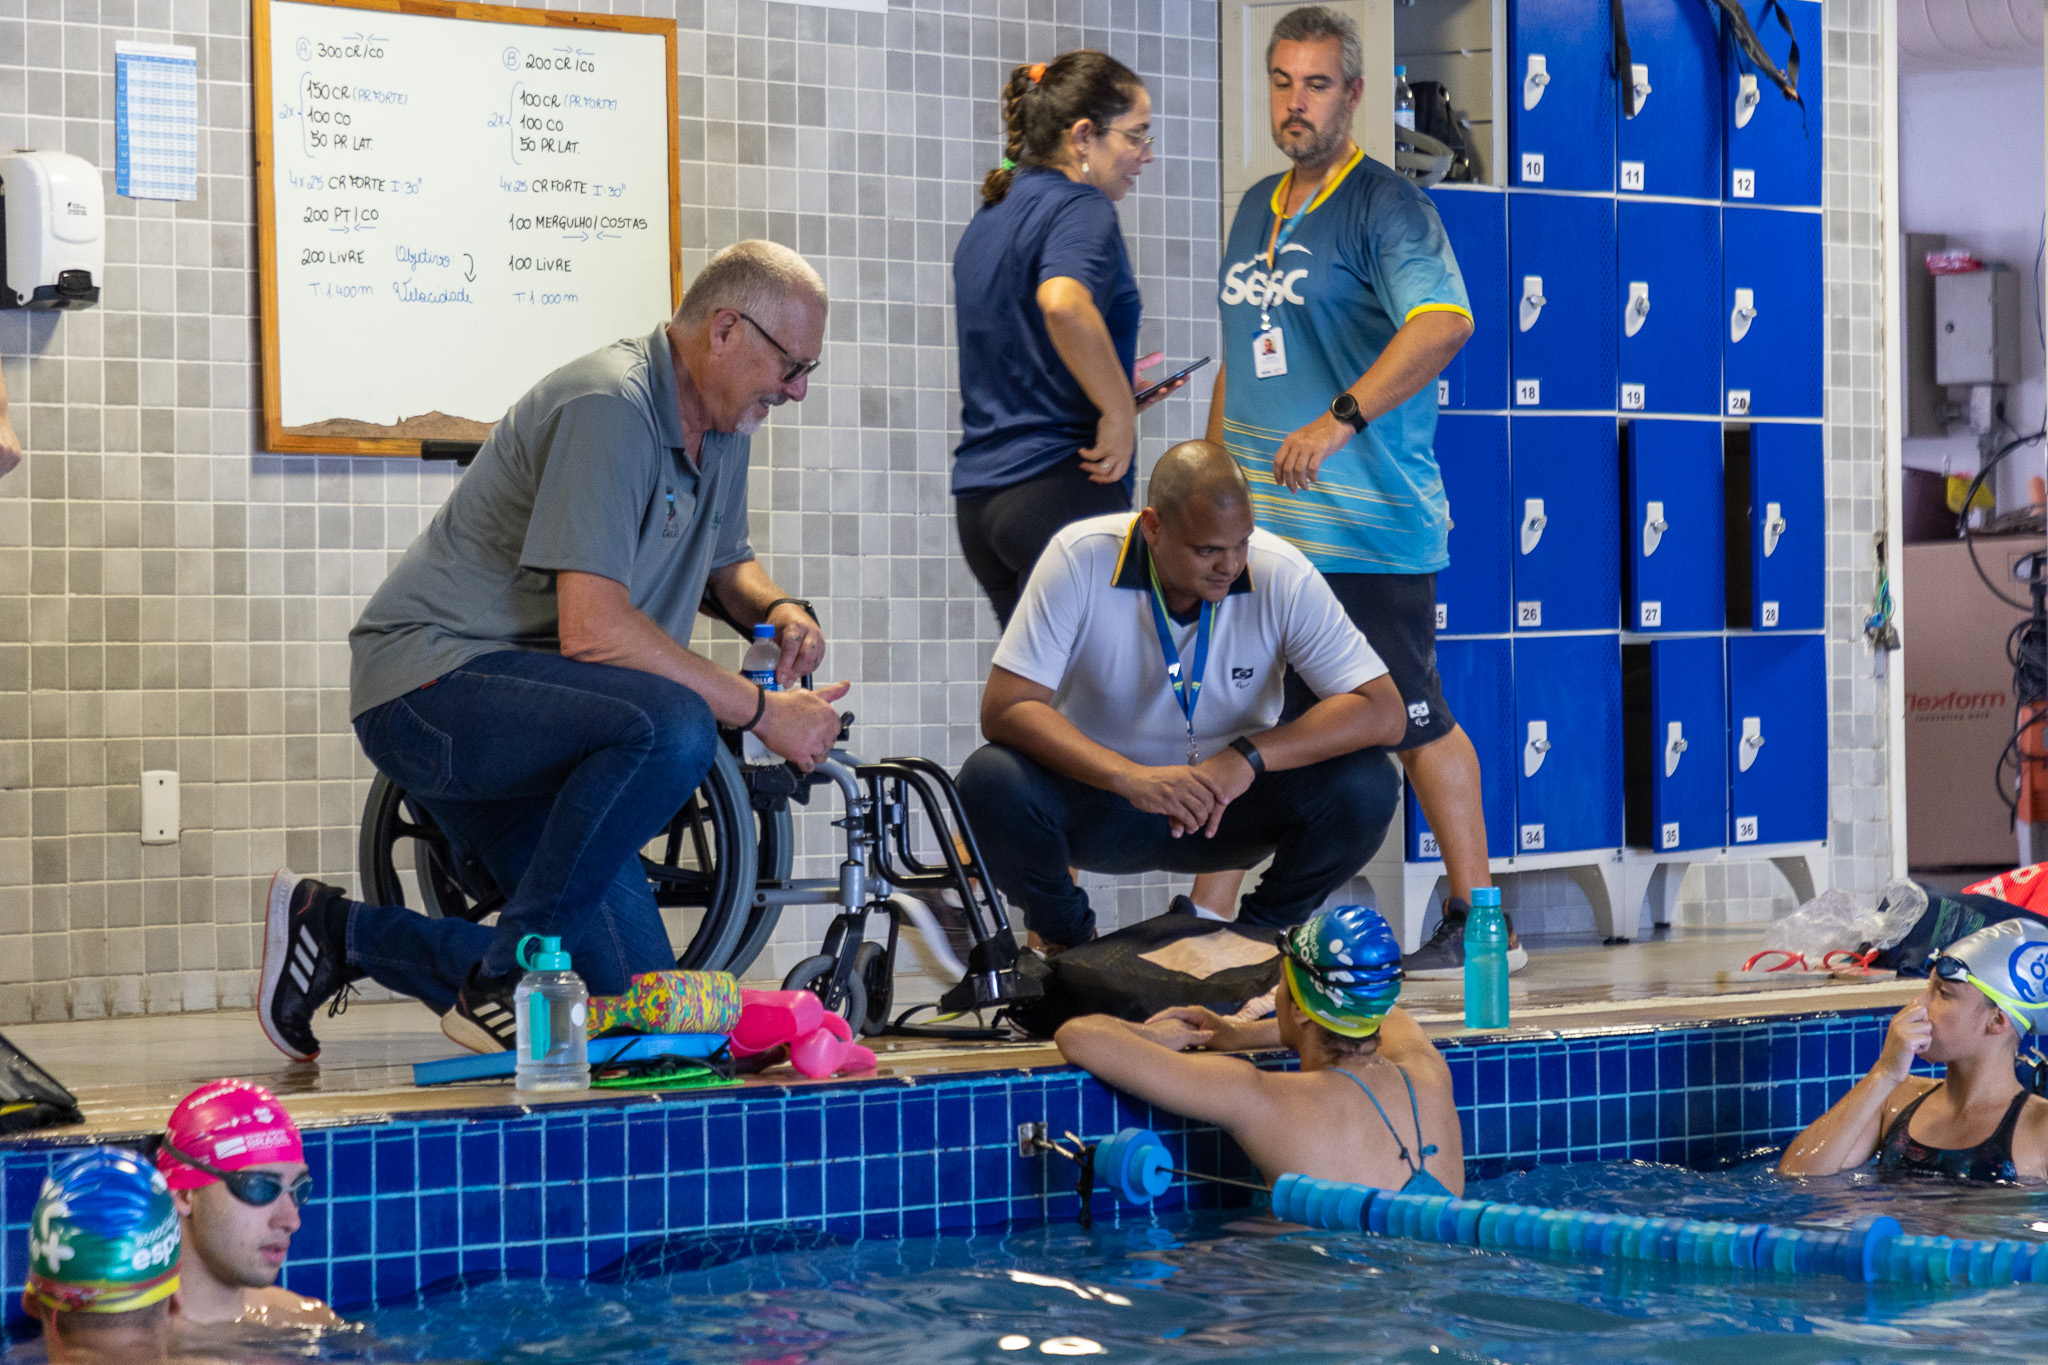 Canoas recebe visita técnica do CPB para ter um Centro de Referência Paralímpico Brasileiro na cidade